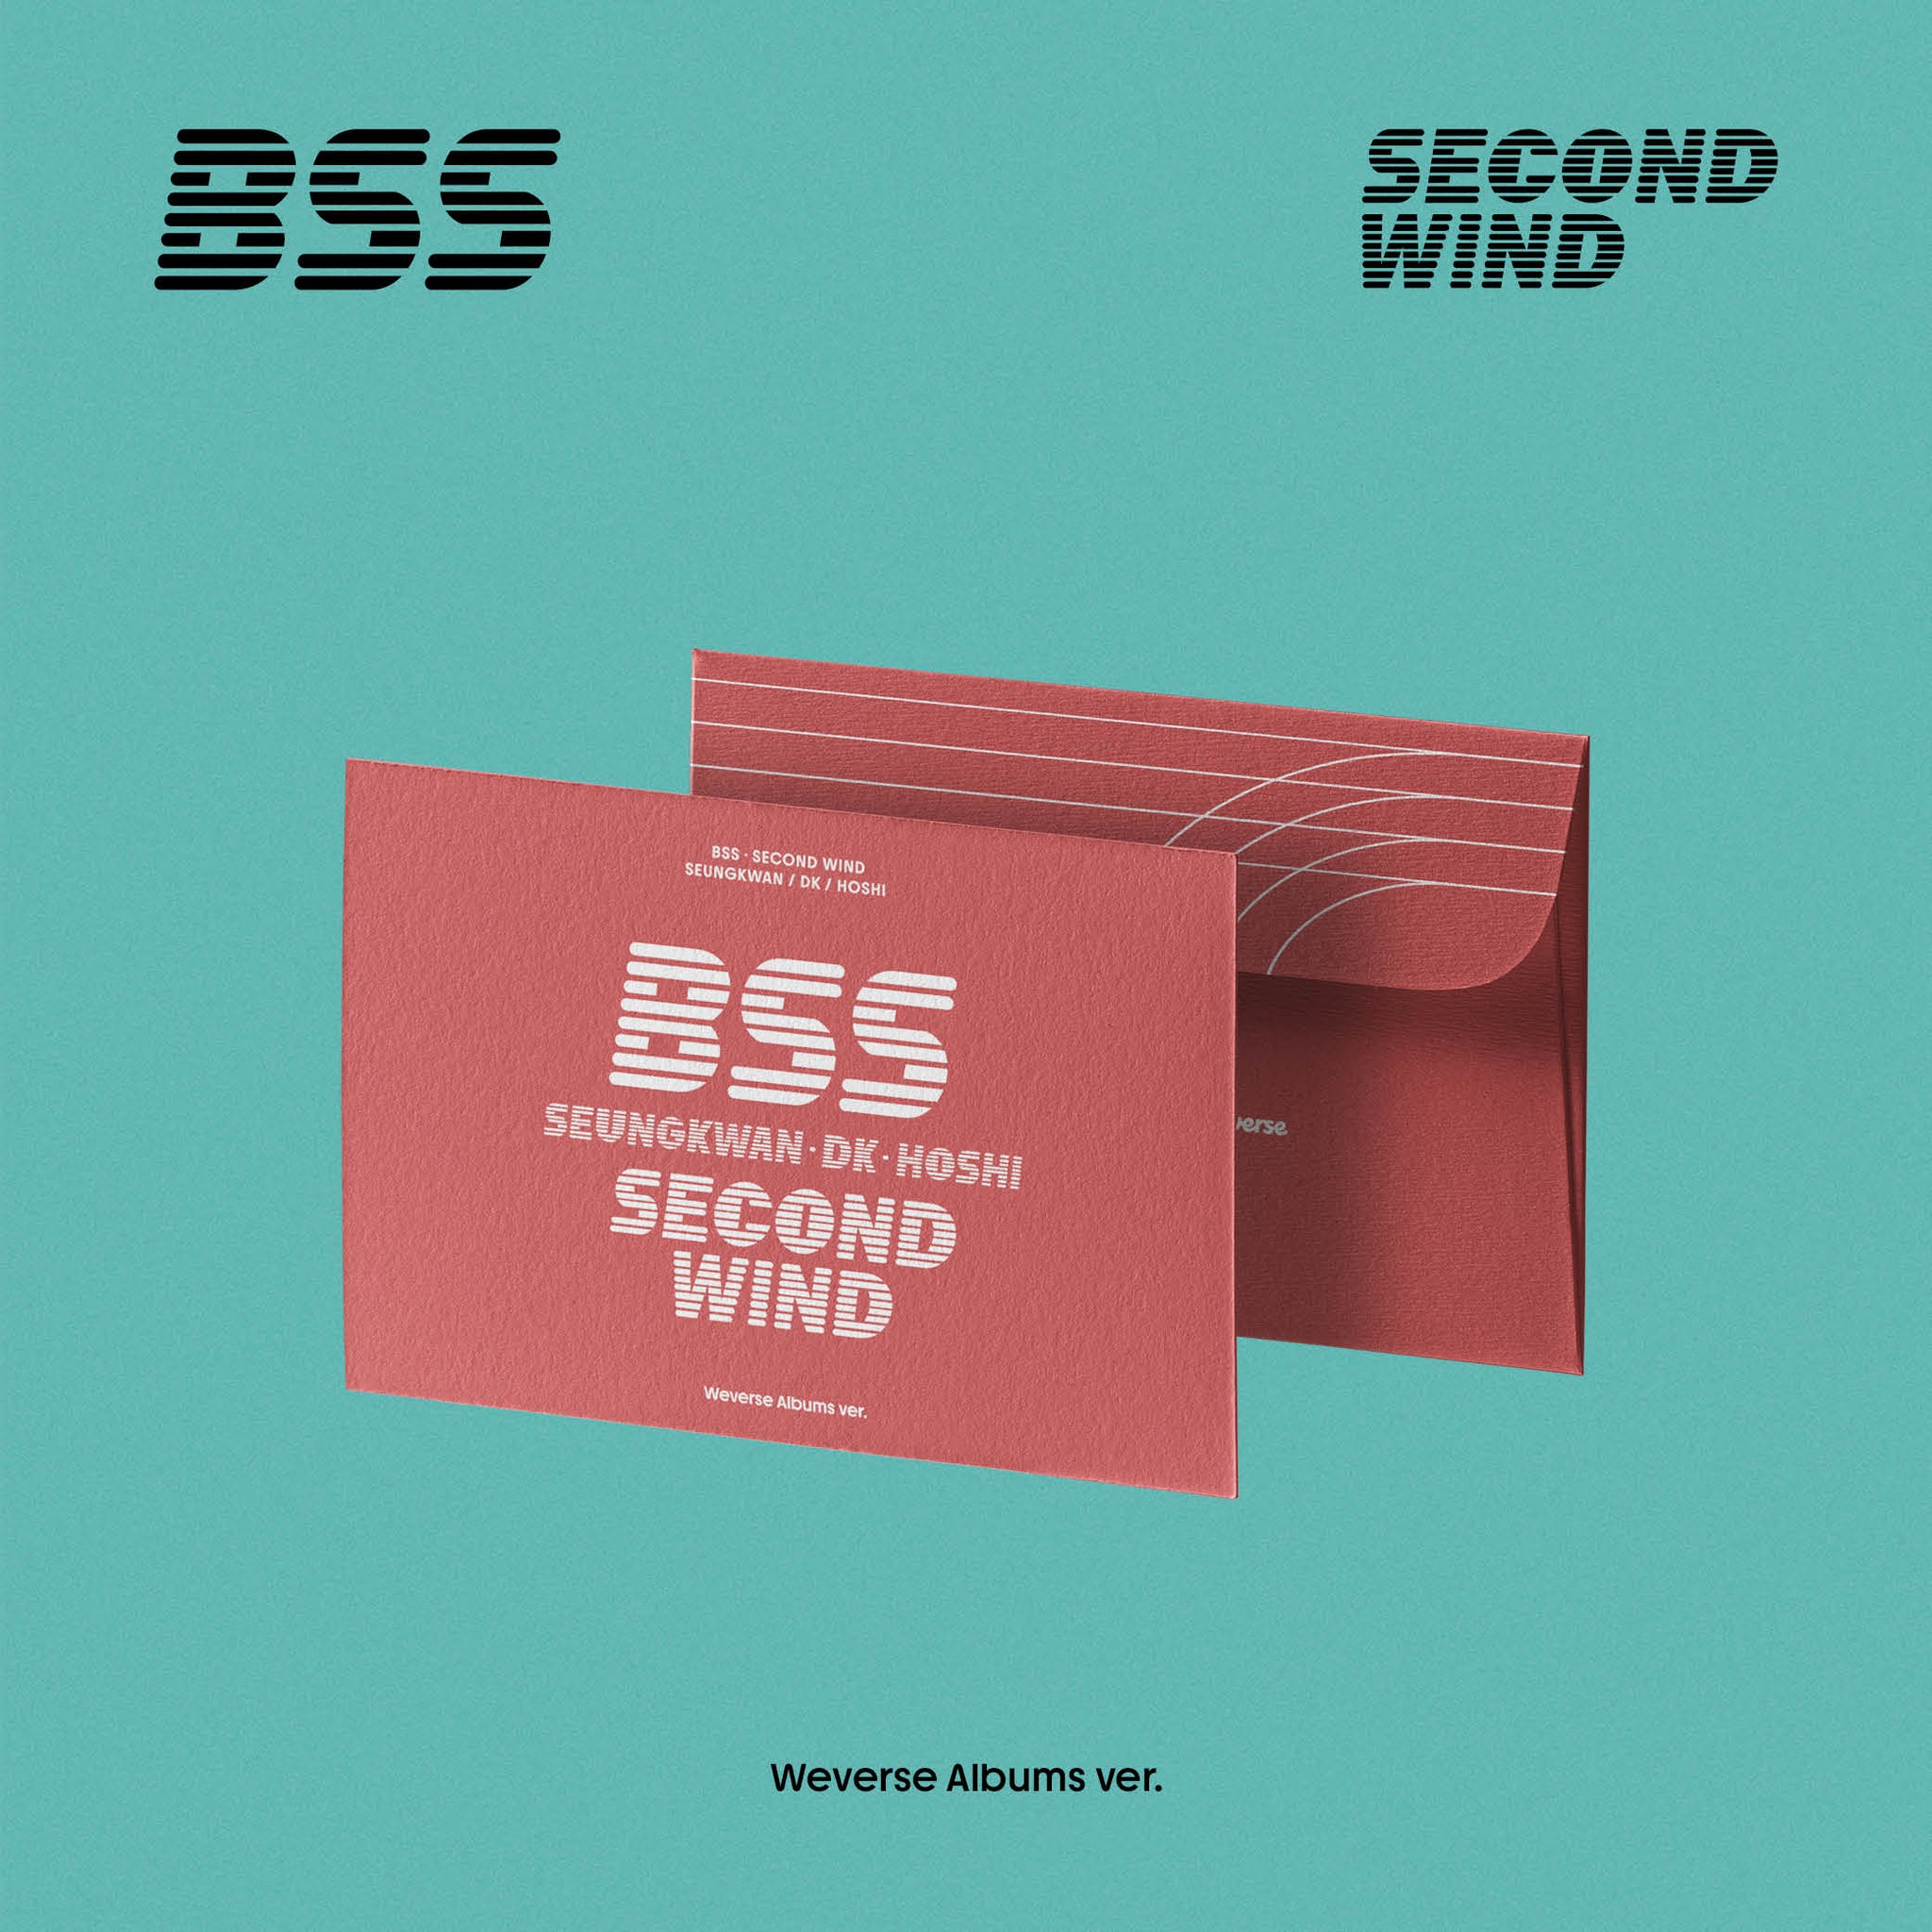 SEVENTEEN BSS - SECOND WIND ( Weverse Albums ver.)